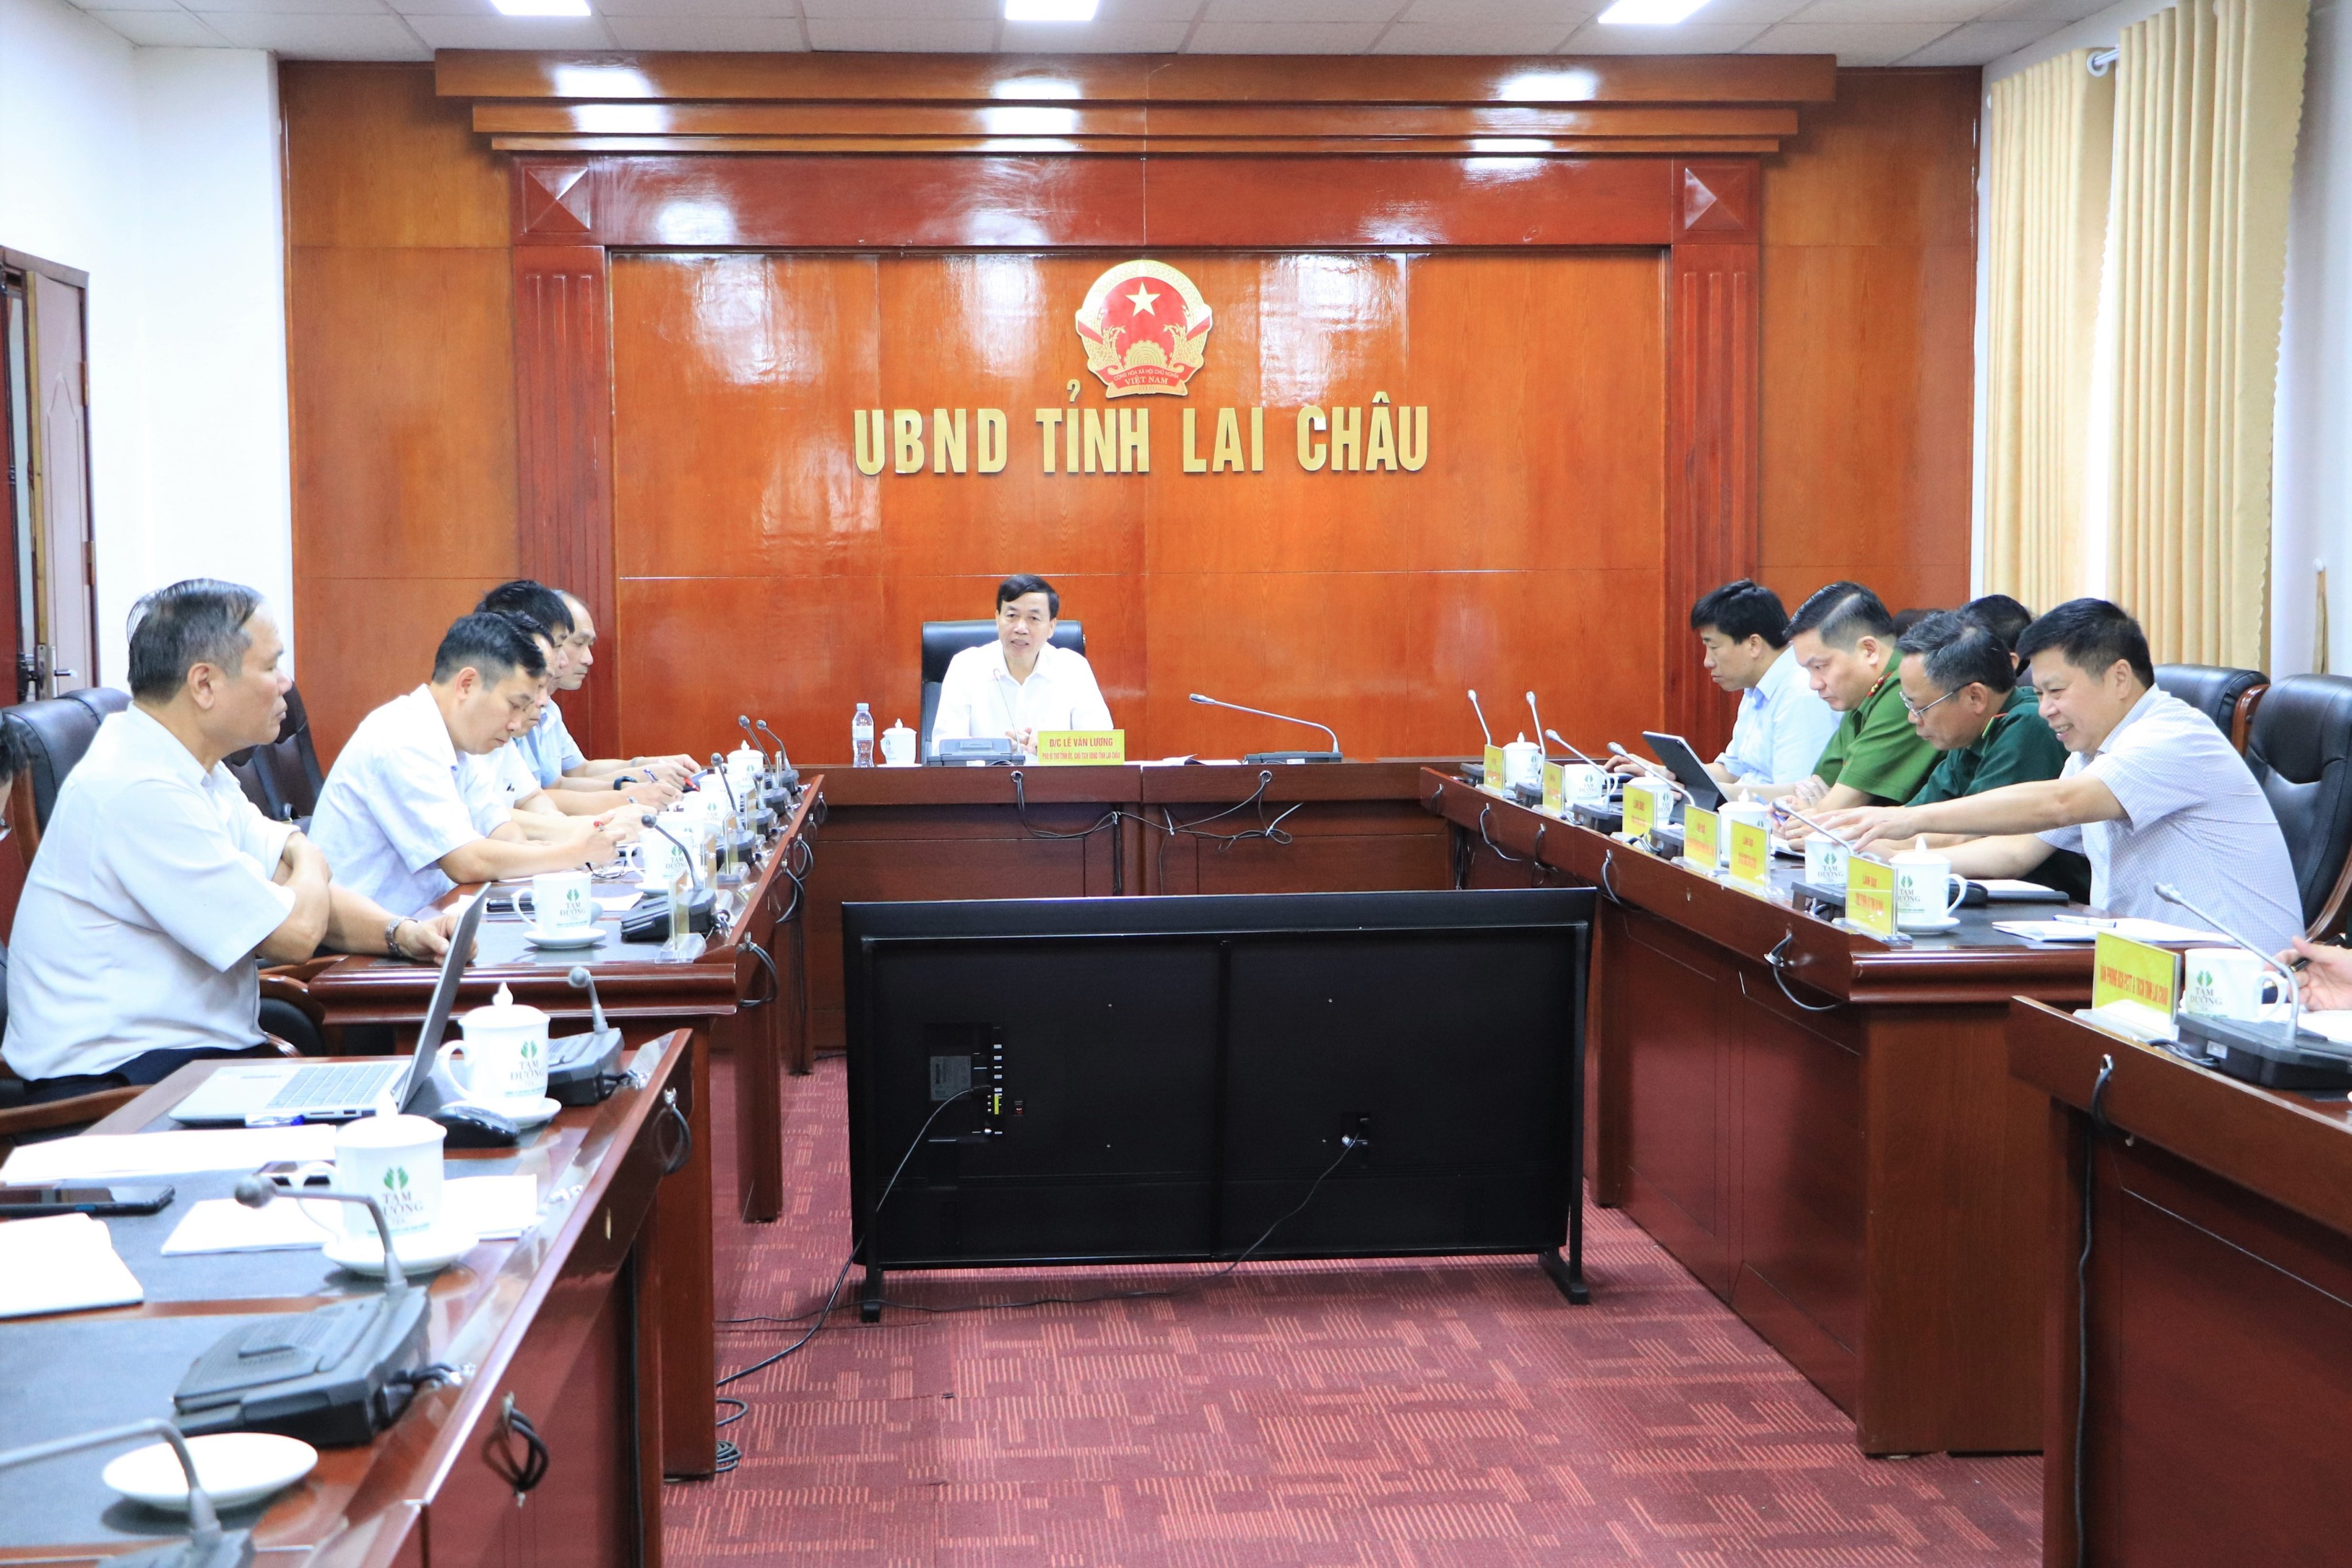 Quang cảnh cuộc họp tại điểm cầu tỉnh Lai Châu